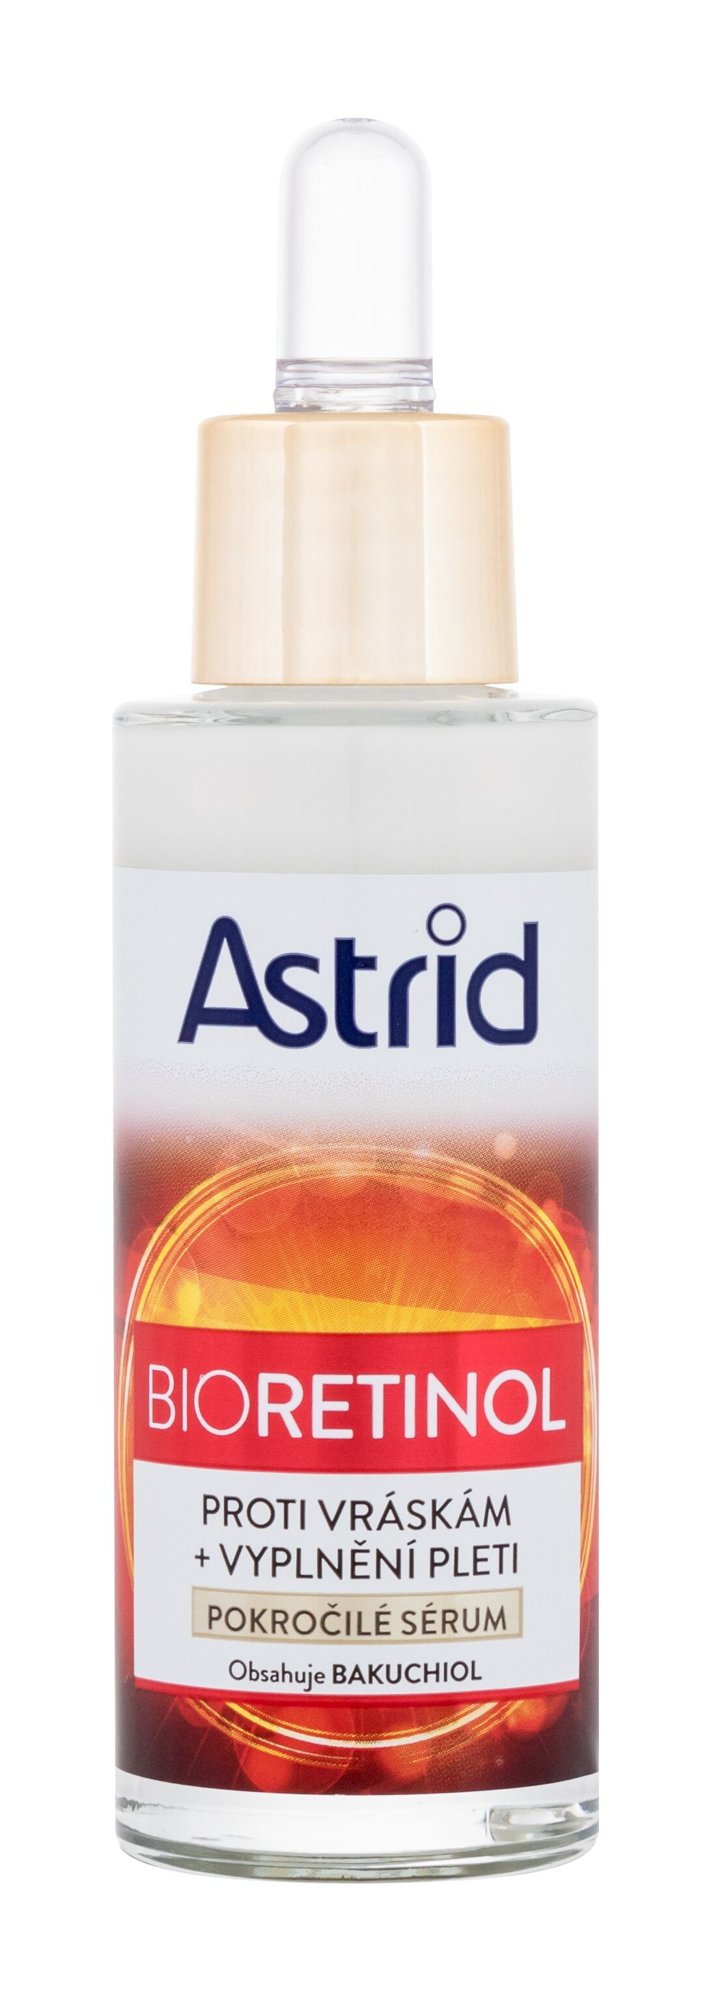 Astrid Bioretinol Serum 30ml Veido serumas